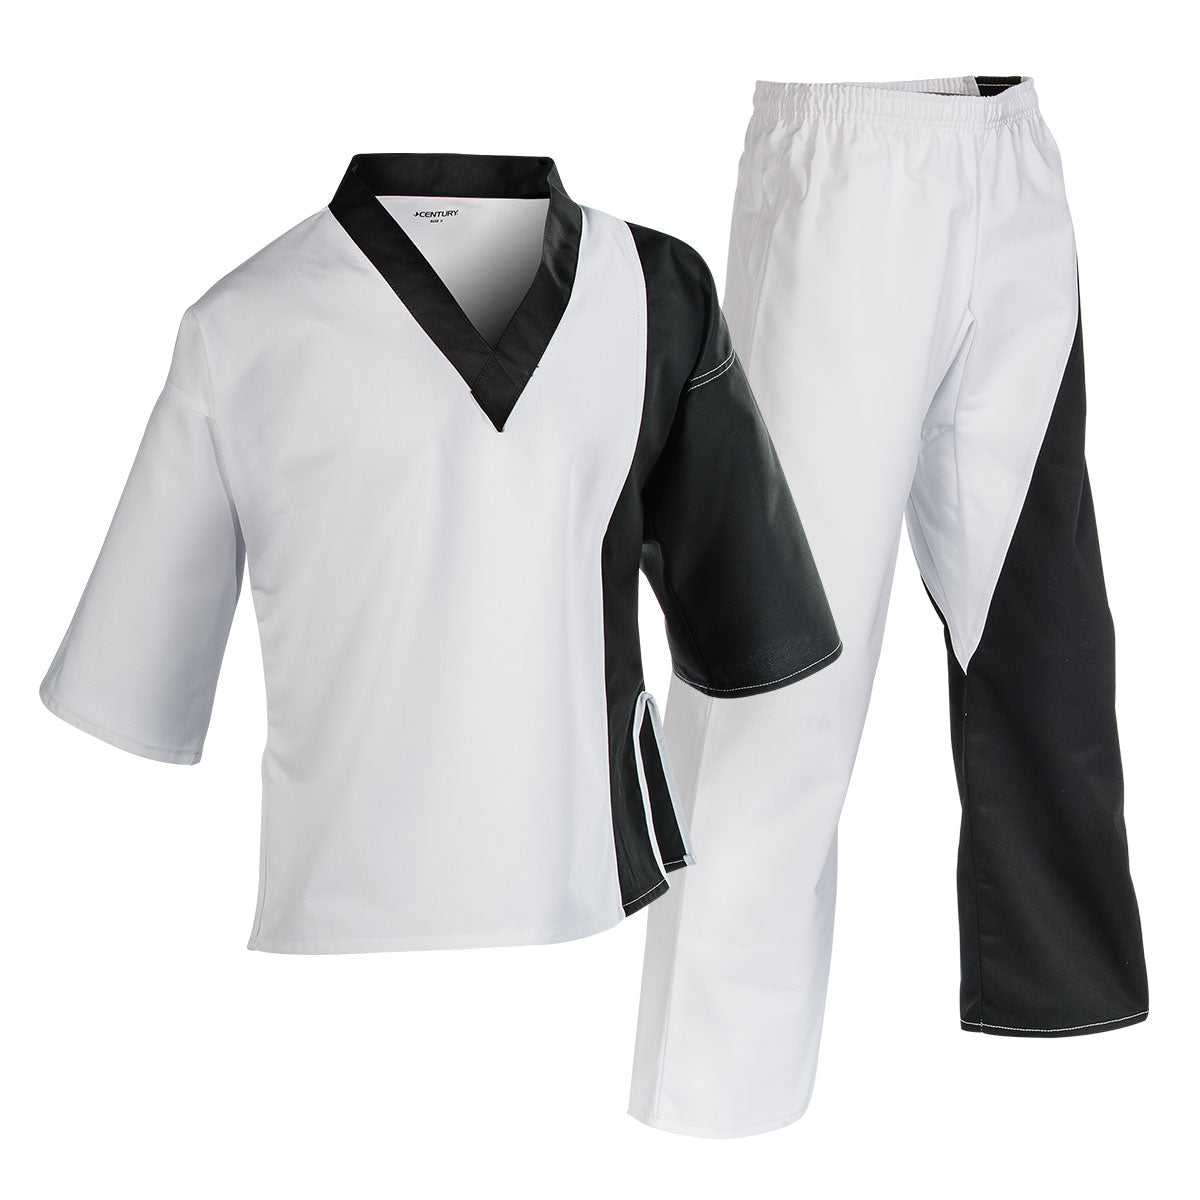 7 oz. Pullover Colorblock Splice Team Uniform Black White